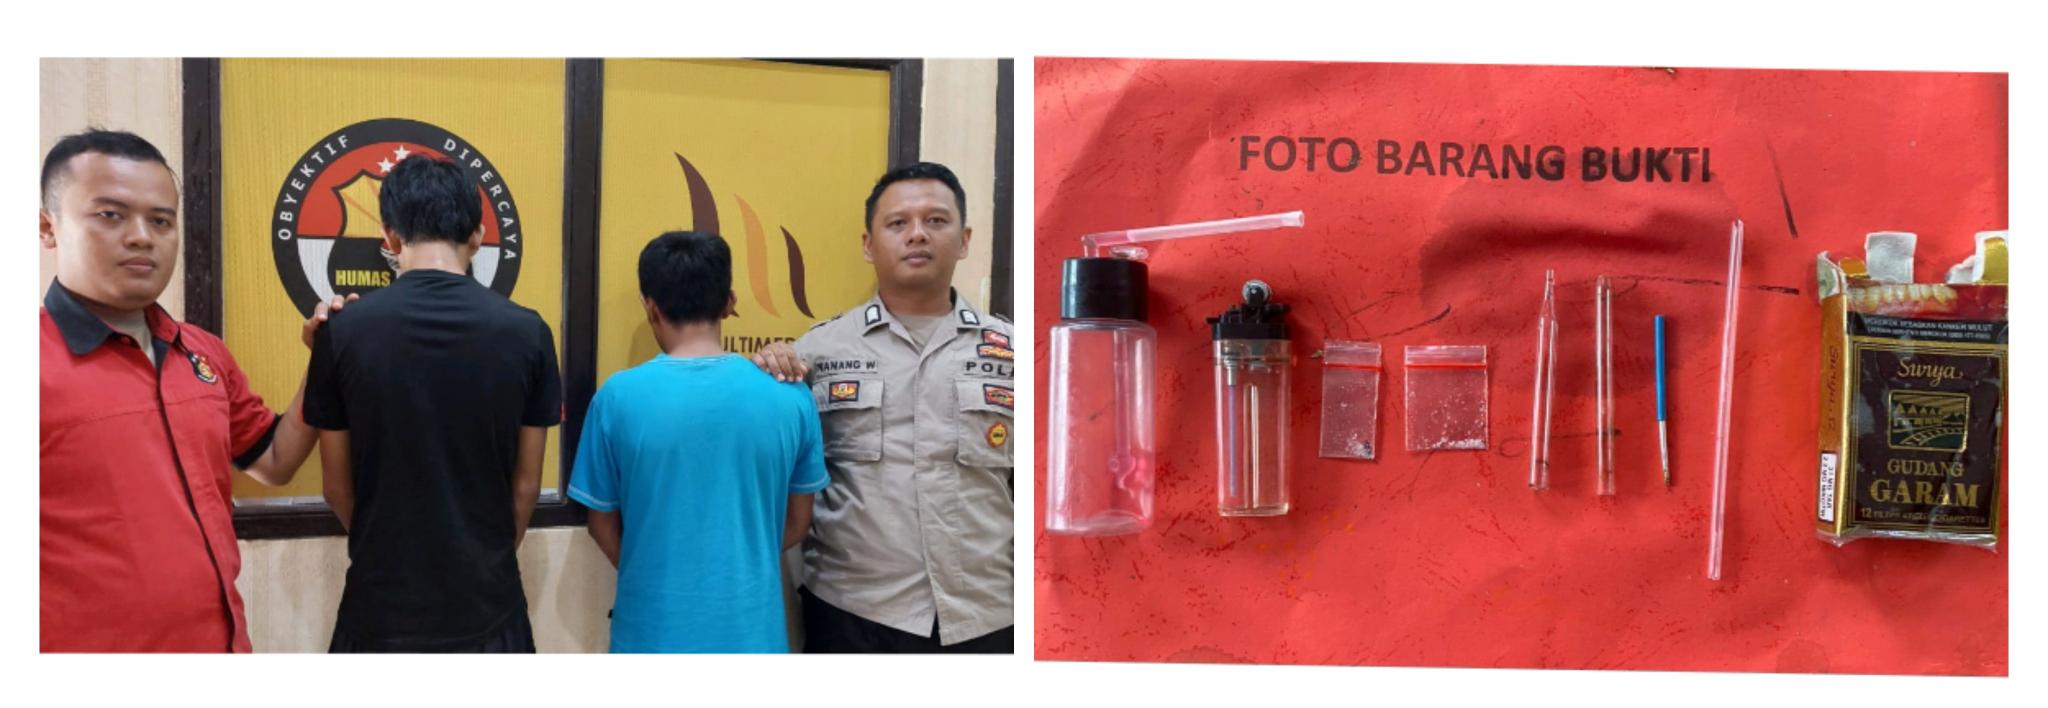 Gerebek Rumah di Baros Kota Agung, Polisi Amankan Dua Pria Sedang Pesta Narkoba 